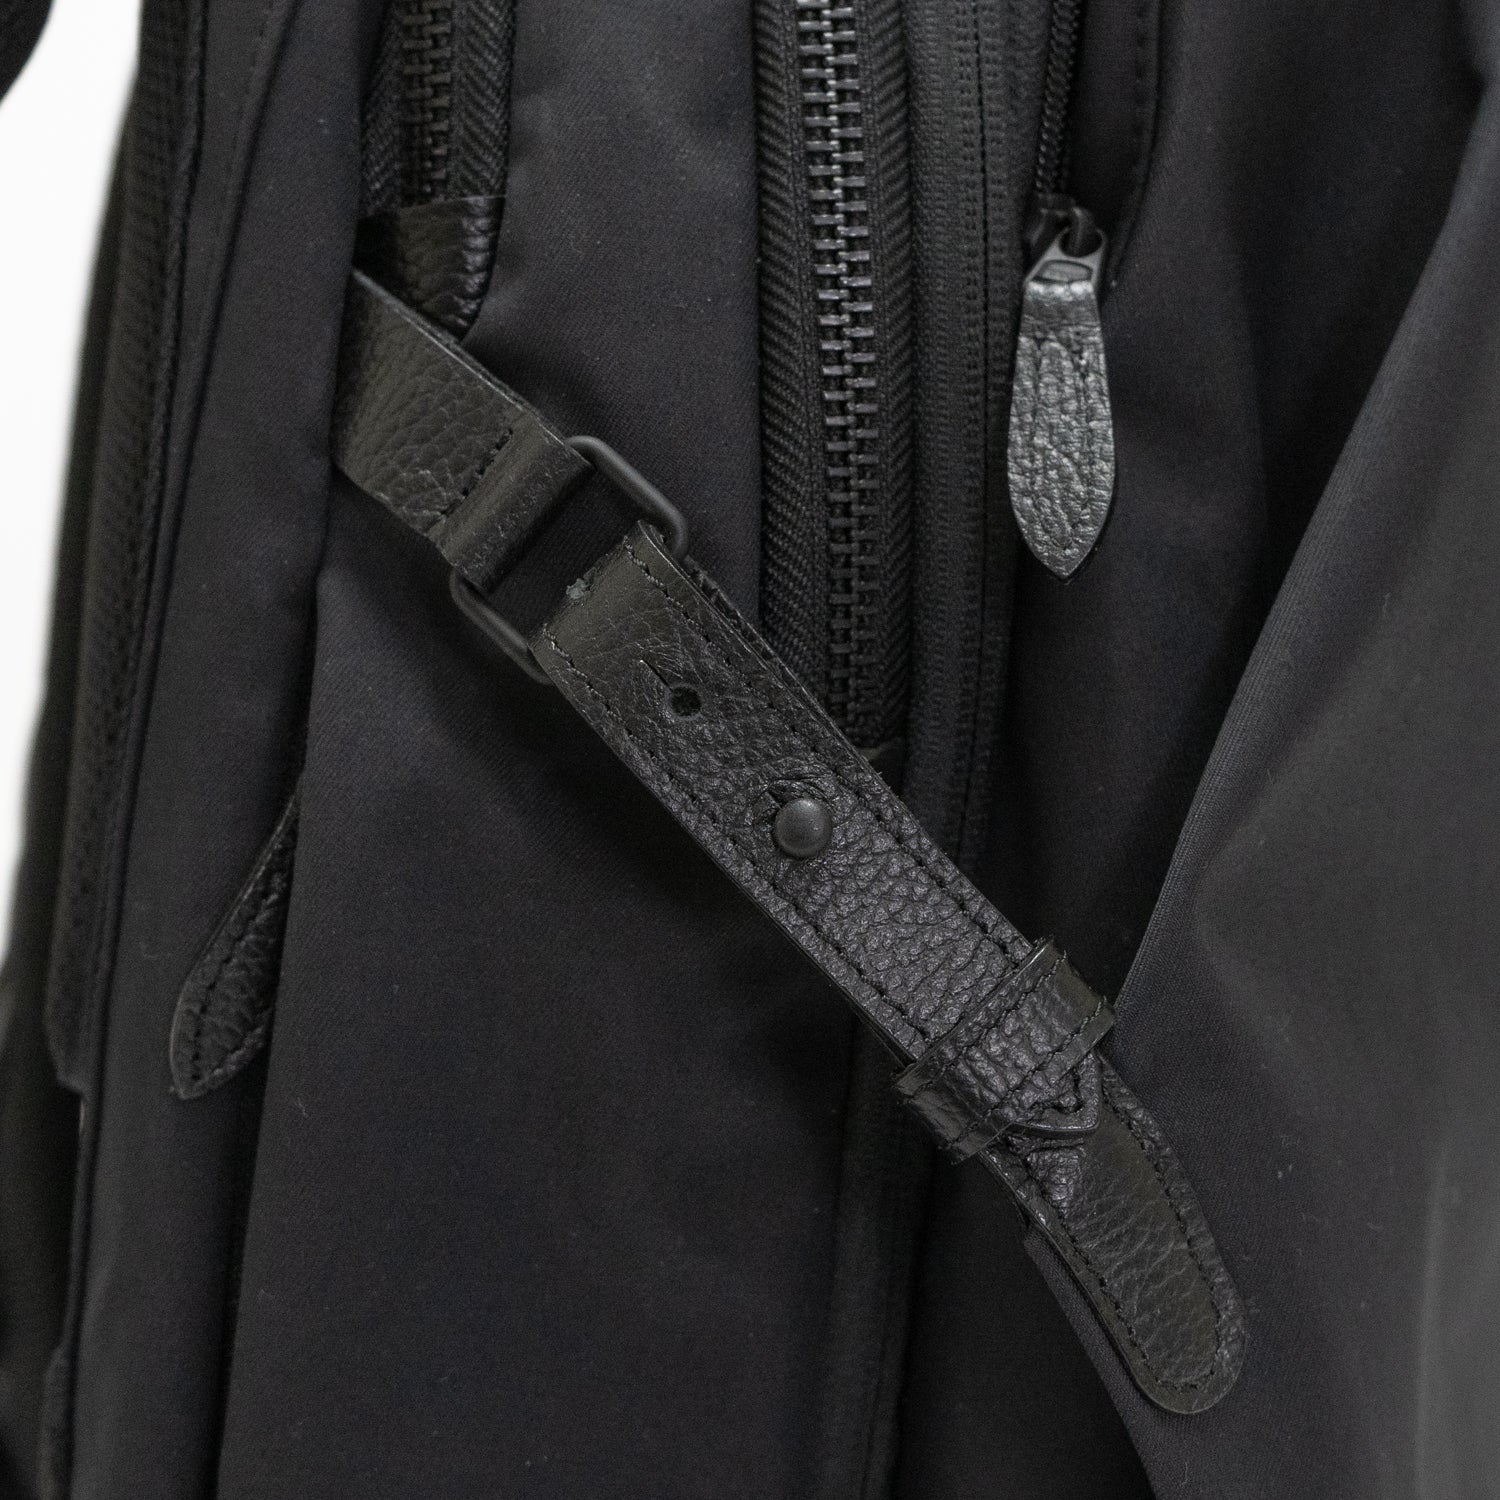 「Momonga ユーティリティバックパック」は、荷物の量に応じて、マチの太さをギボシで調節できます。